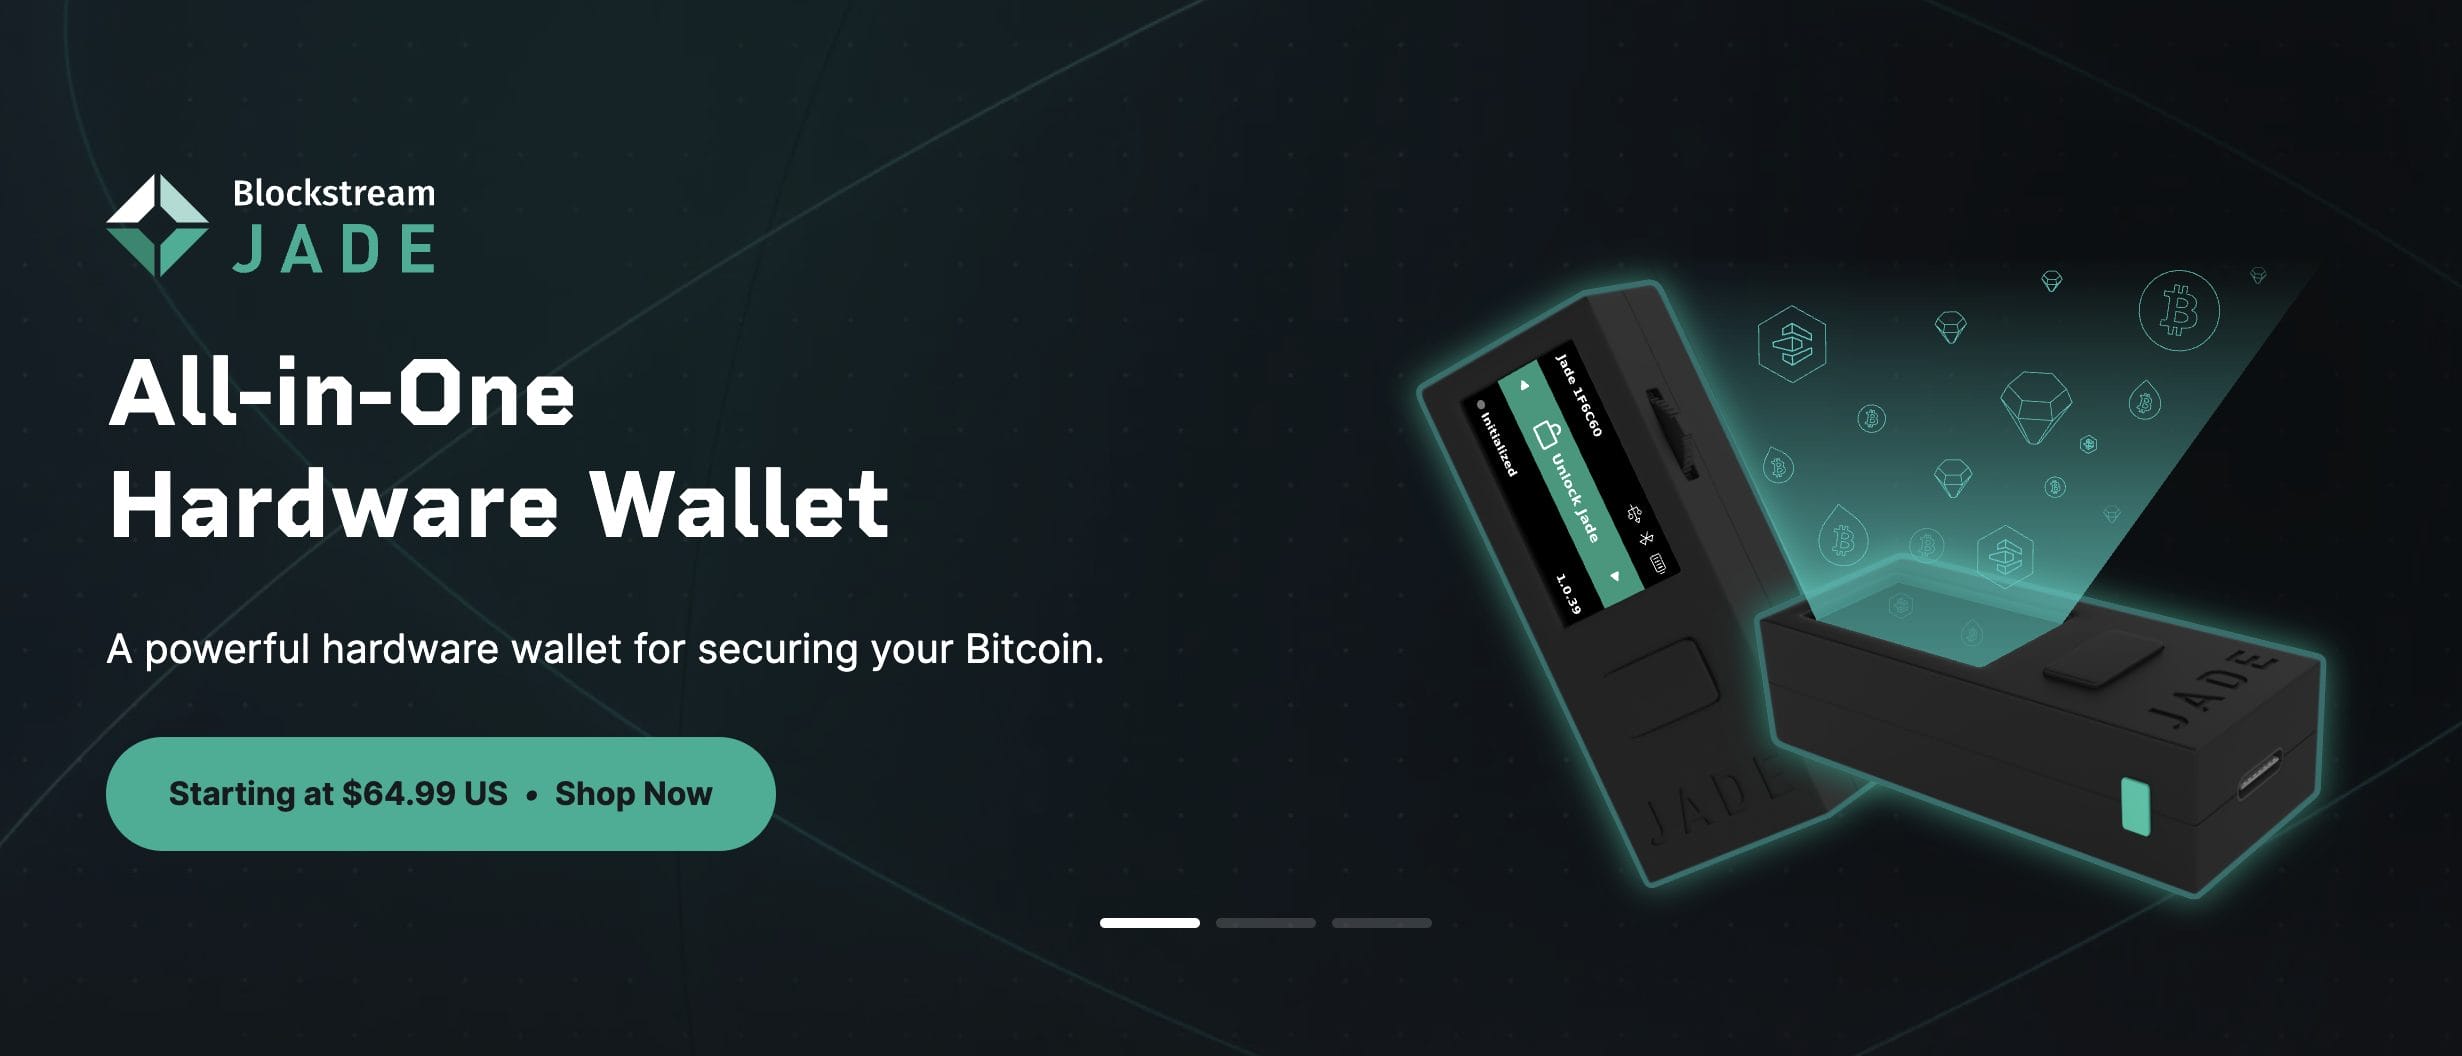 Blockstream Jade wallet review 